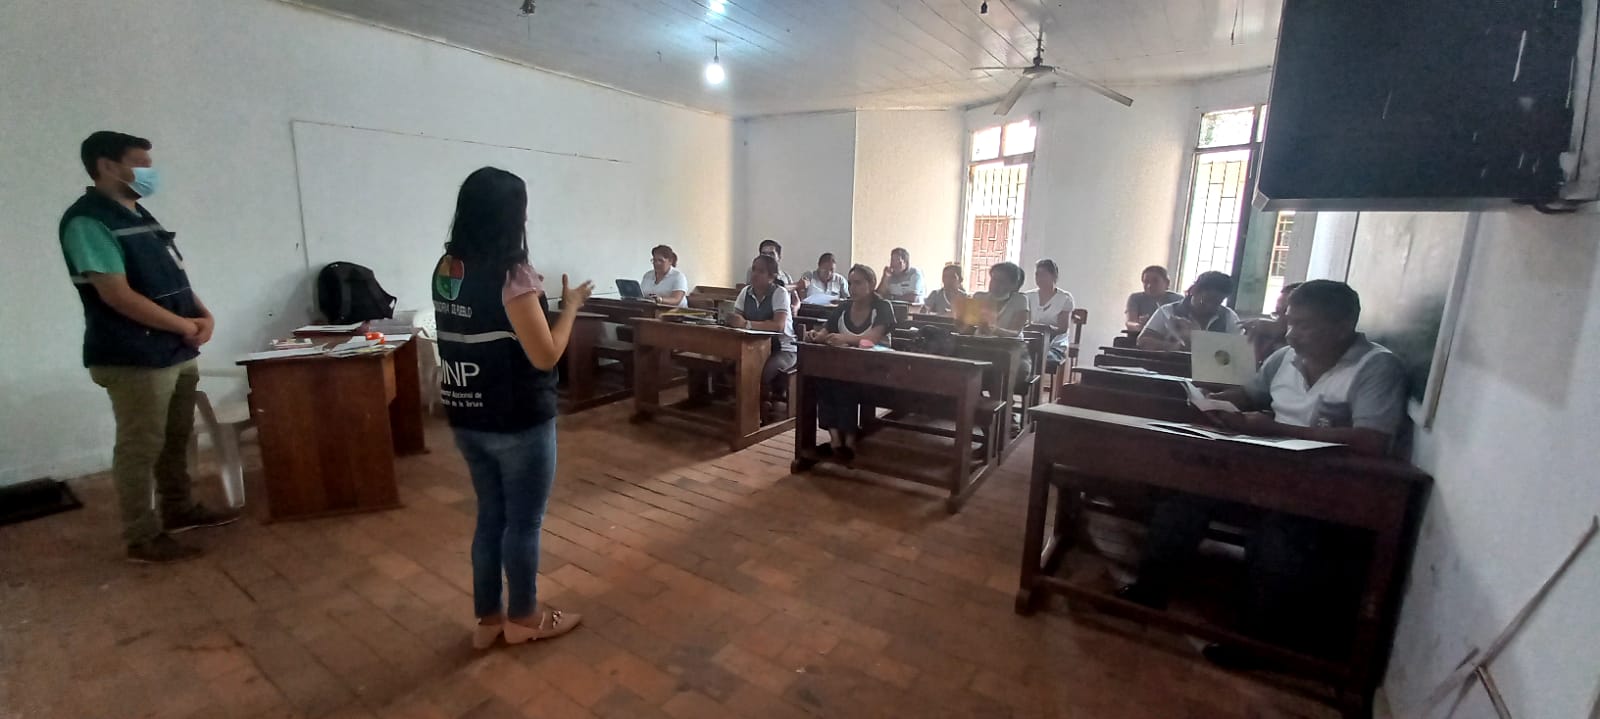 Defensoría del Pueblo capacita para prevenir la violencia en unidades educativas de Riberalta